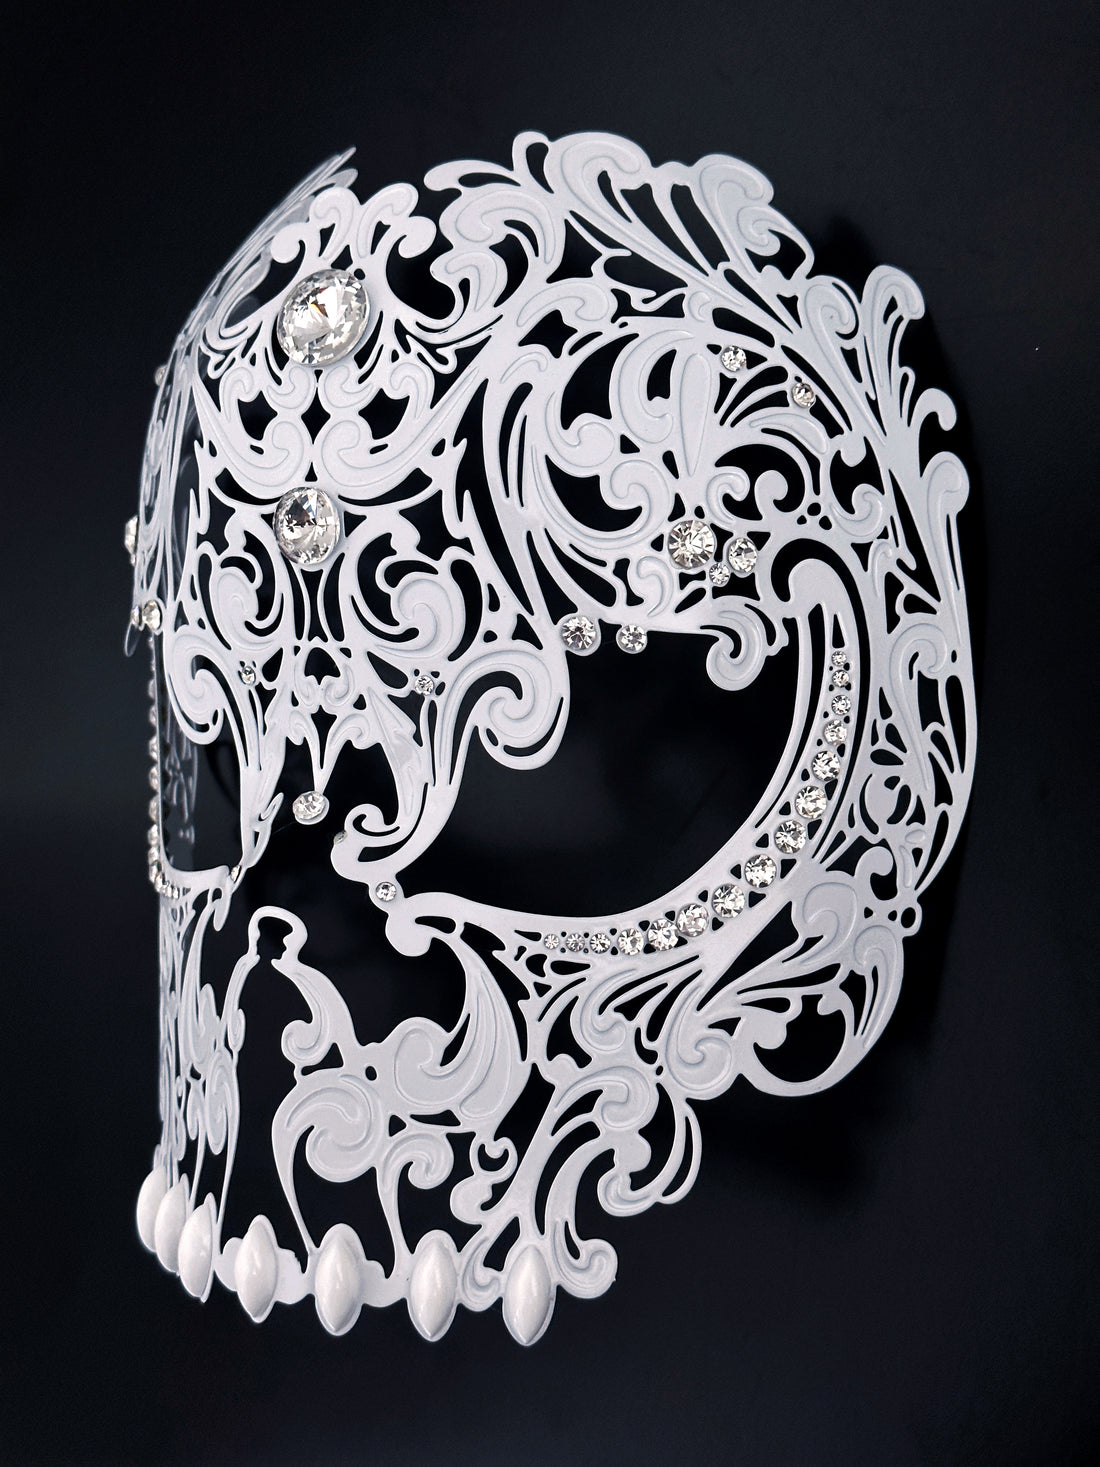 Metal Skull Mask - White